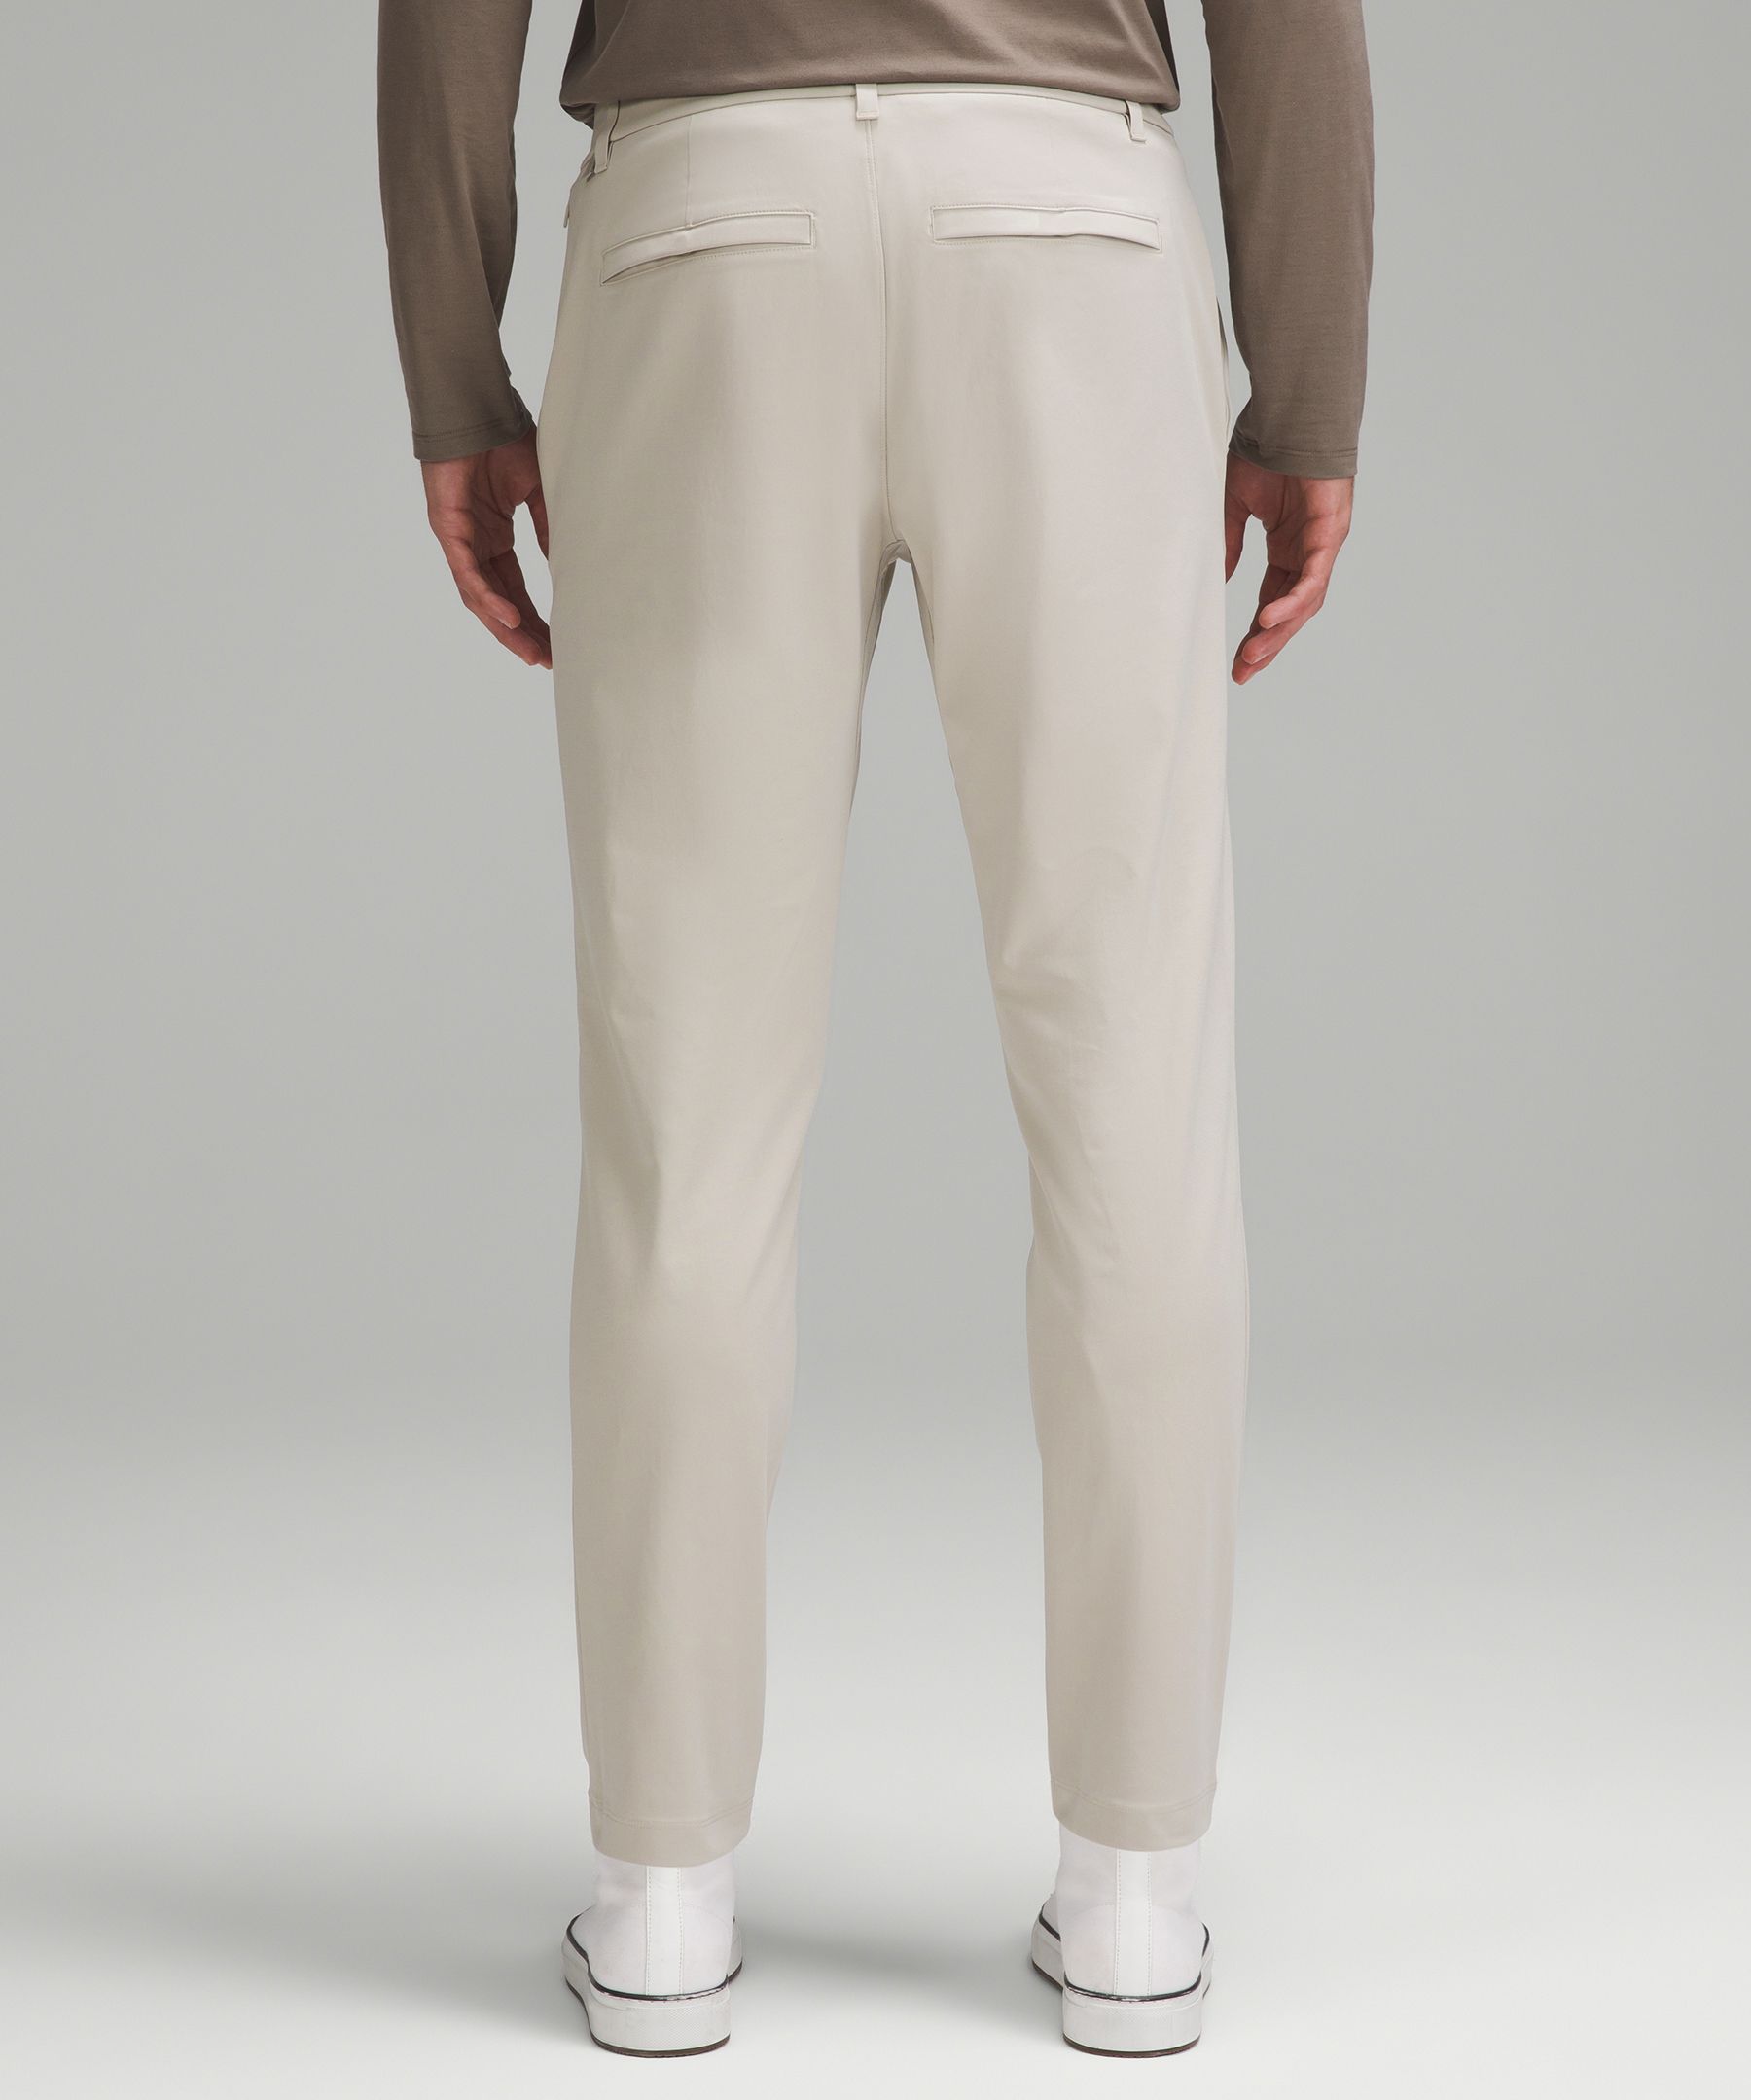 Lululemon Men's Size 31 x 26 ABC Slim-Fit Pants Trousers Warpstreme Bone  LM5AD7S